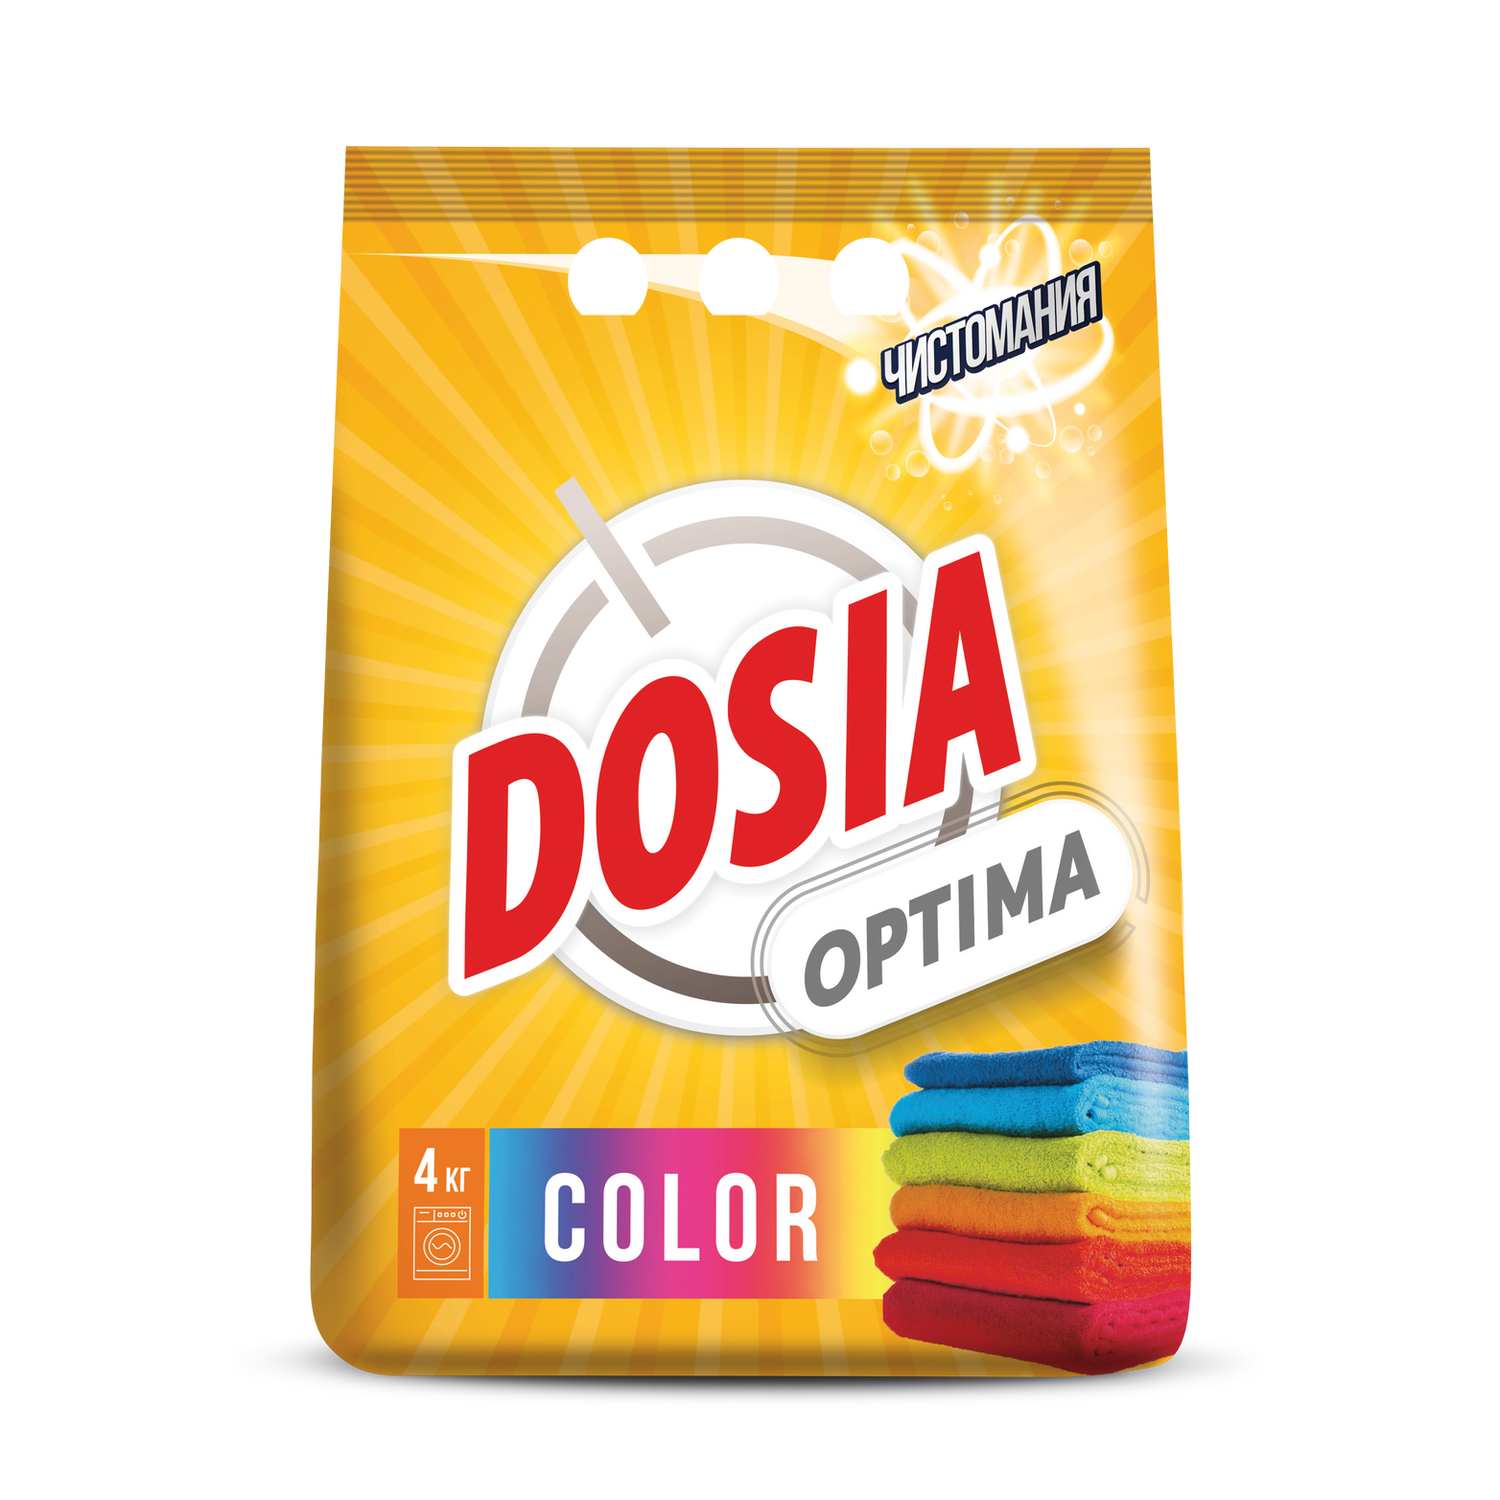 Порошок для стирки Dosia для цветных вещей OPTIMA COLOR 4кг - фото 1